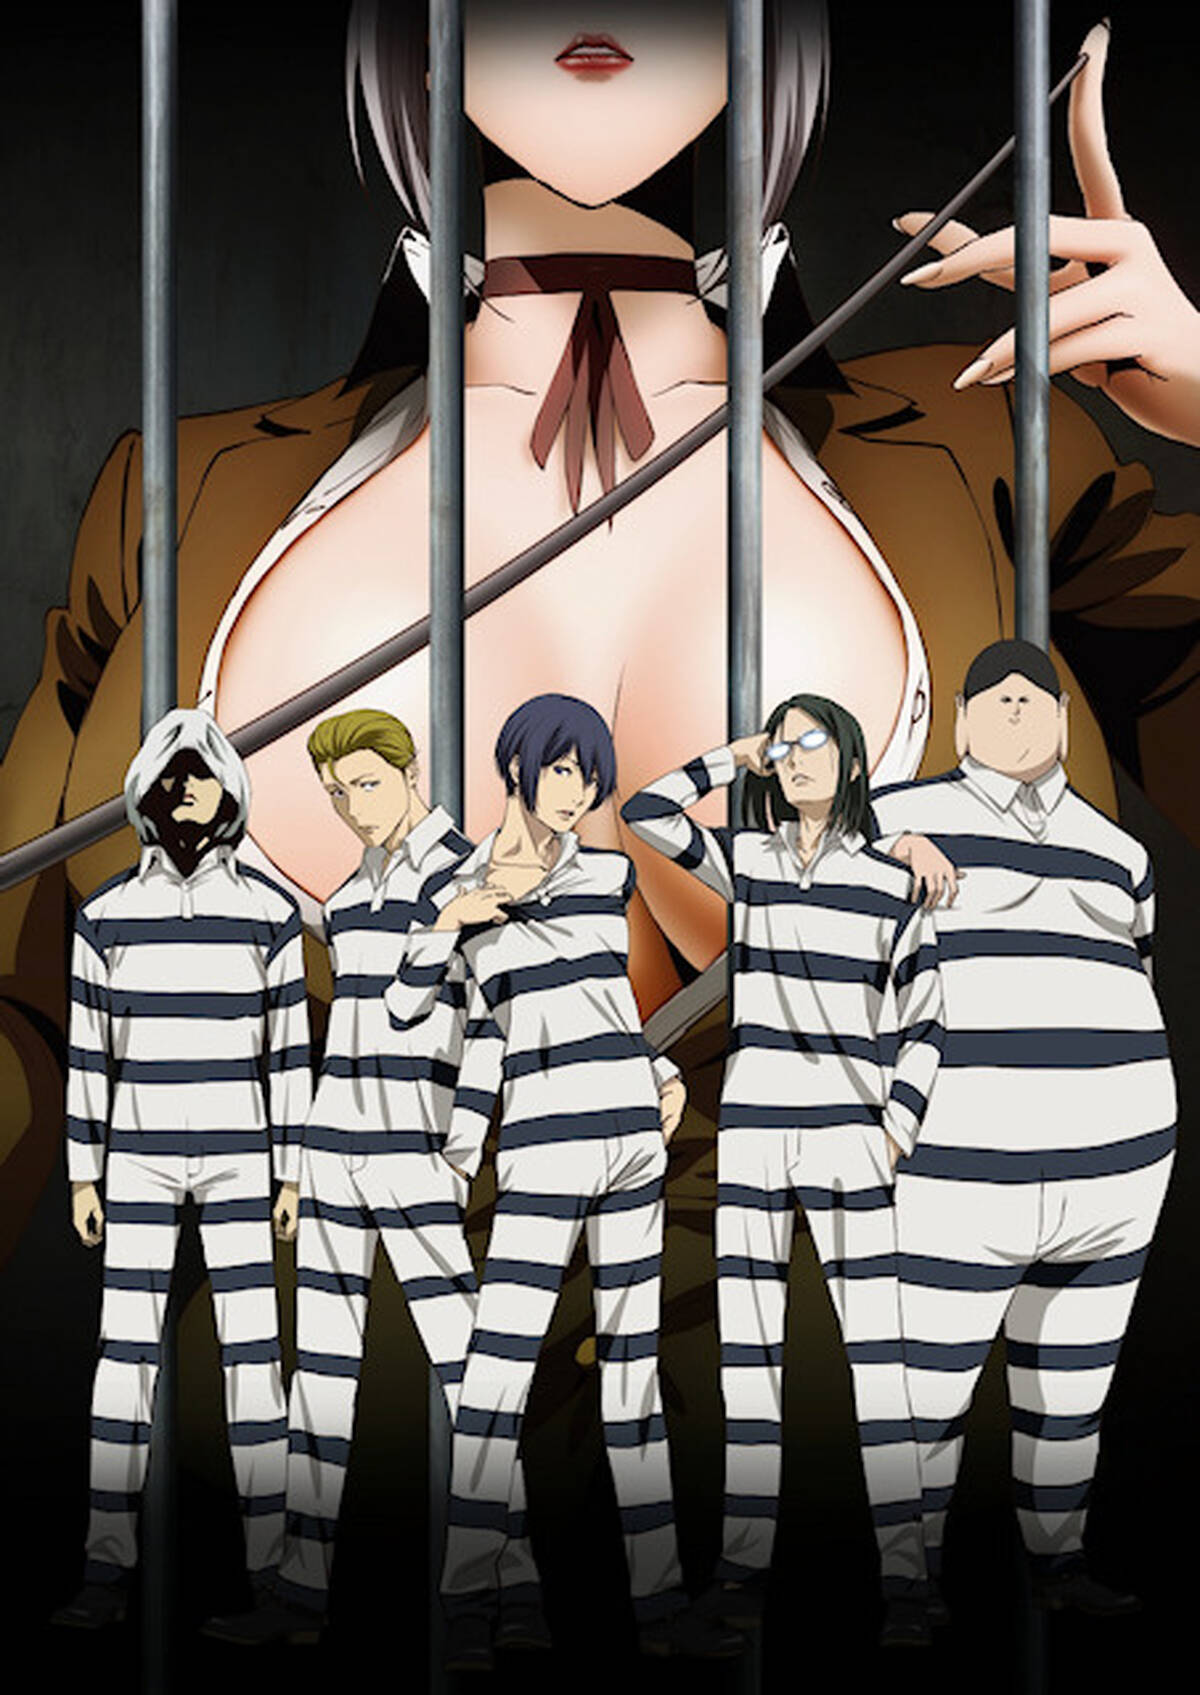 監獄学園 プリズンスクール 15夏にtvアニメ化 元女子高に入学したが美女たちに投獄されてしまった5人の男子生徒の戦いを描く アキバ総研